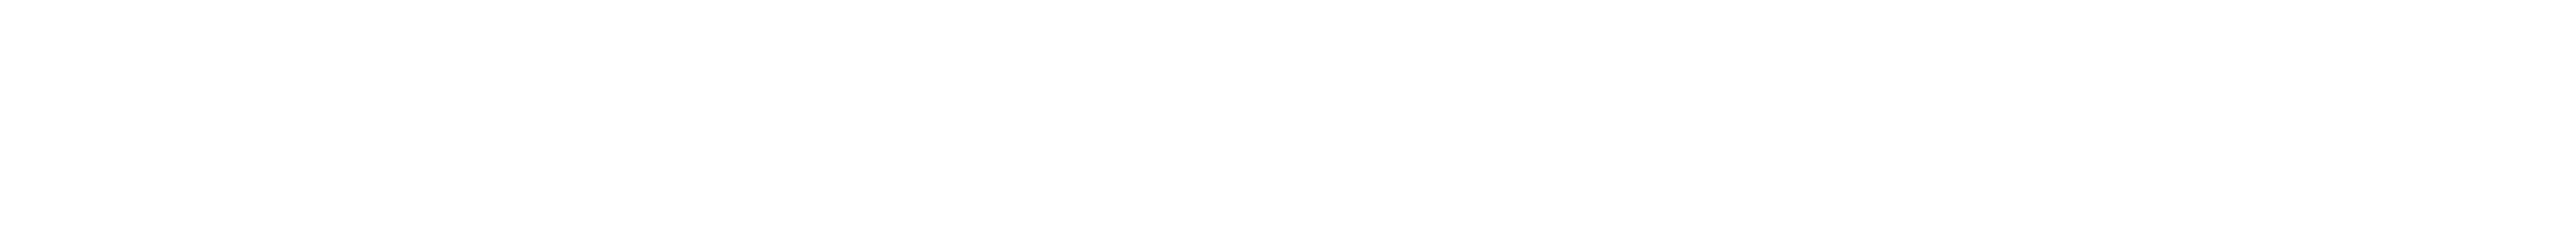 Siebert media logo